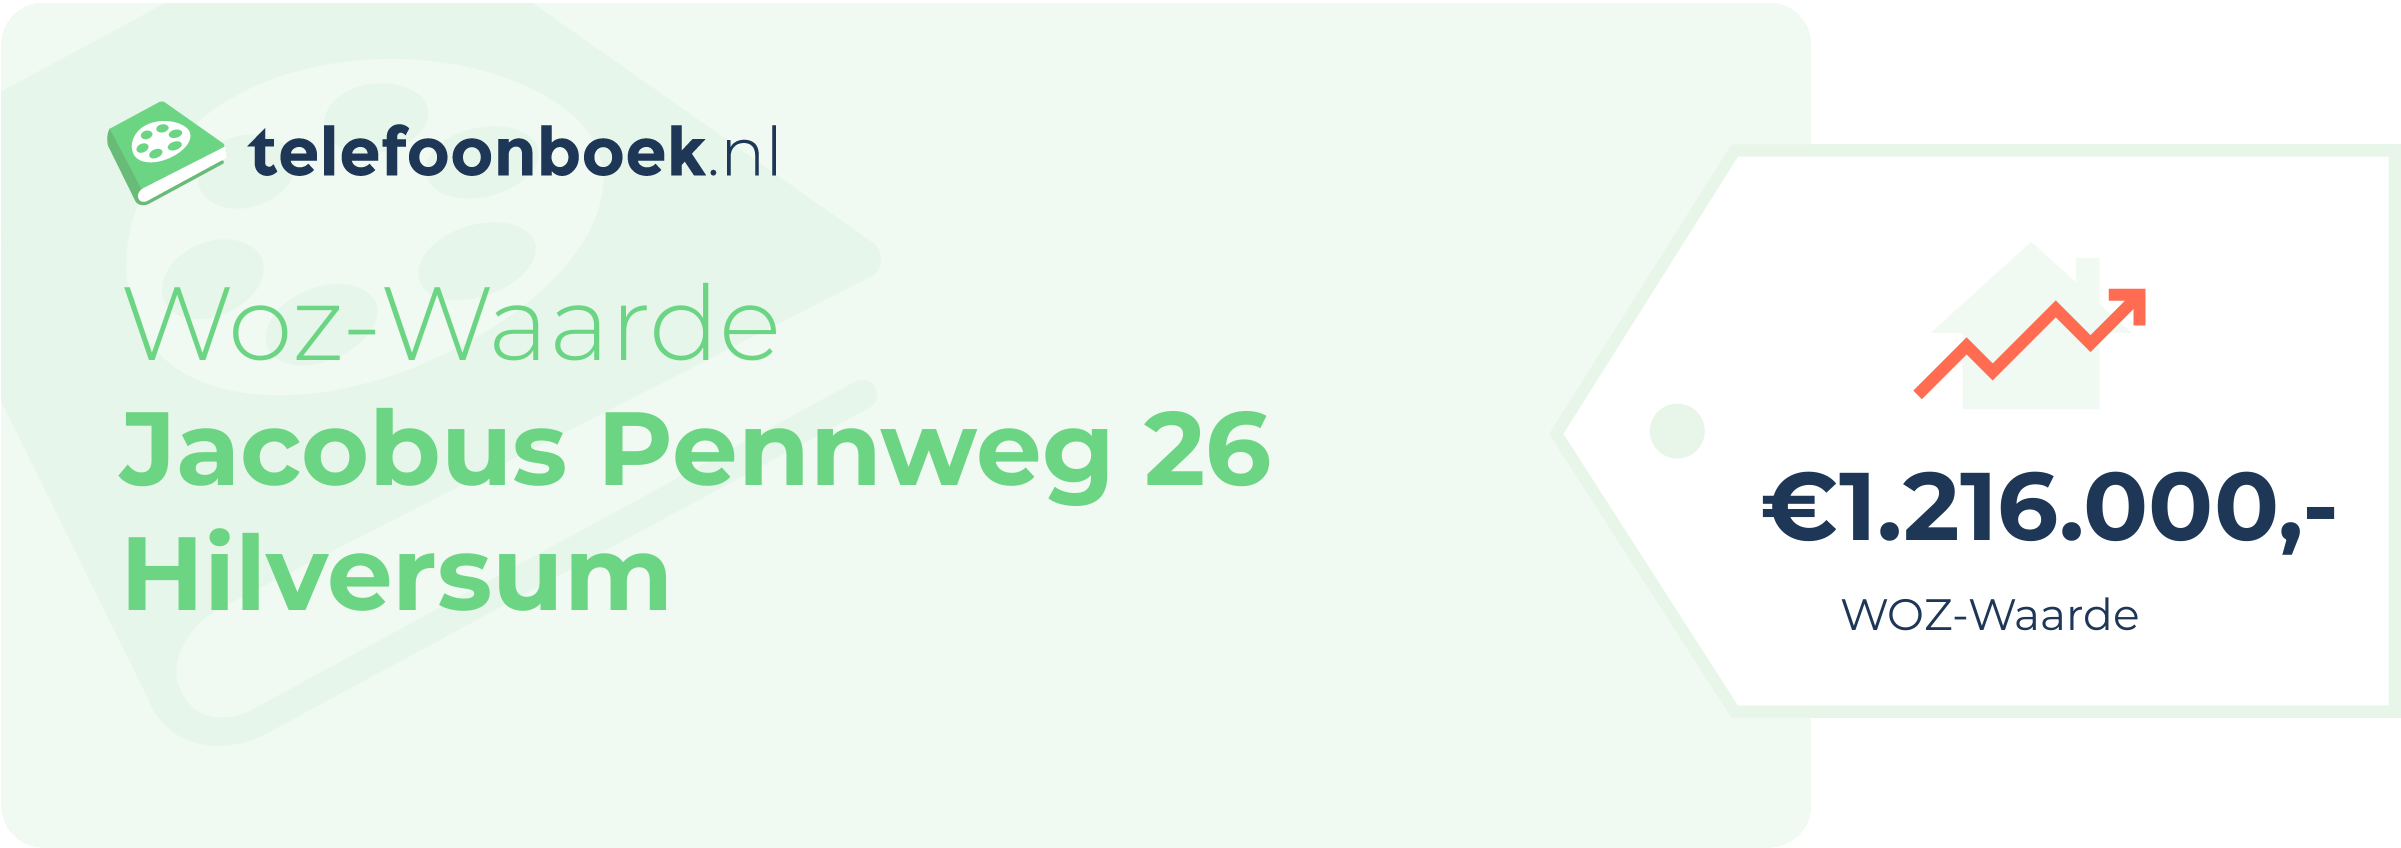 WOZ-waarde Jacobus Pennweg 26 Hilversum